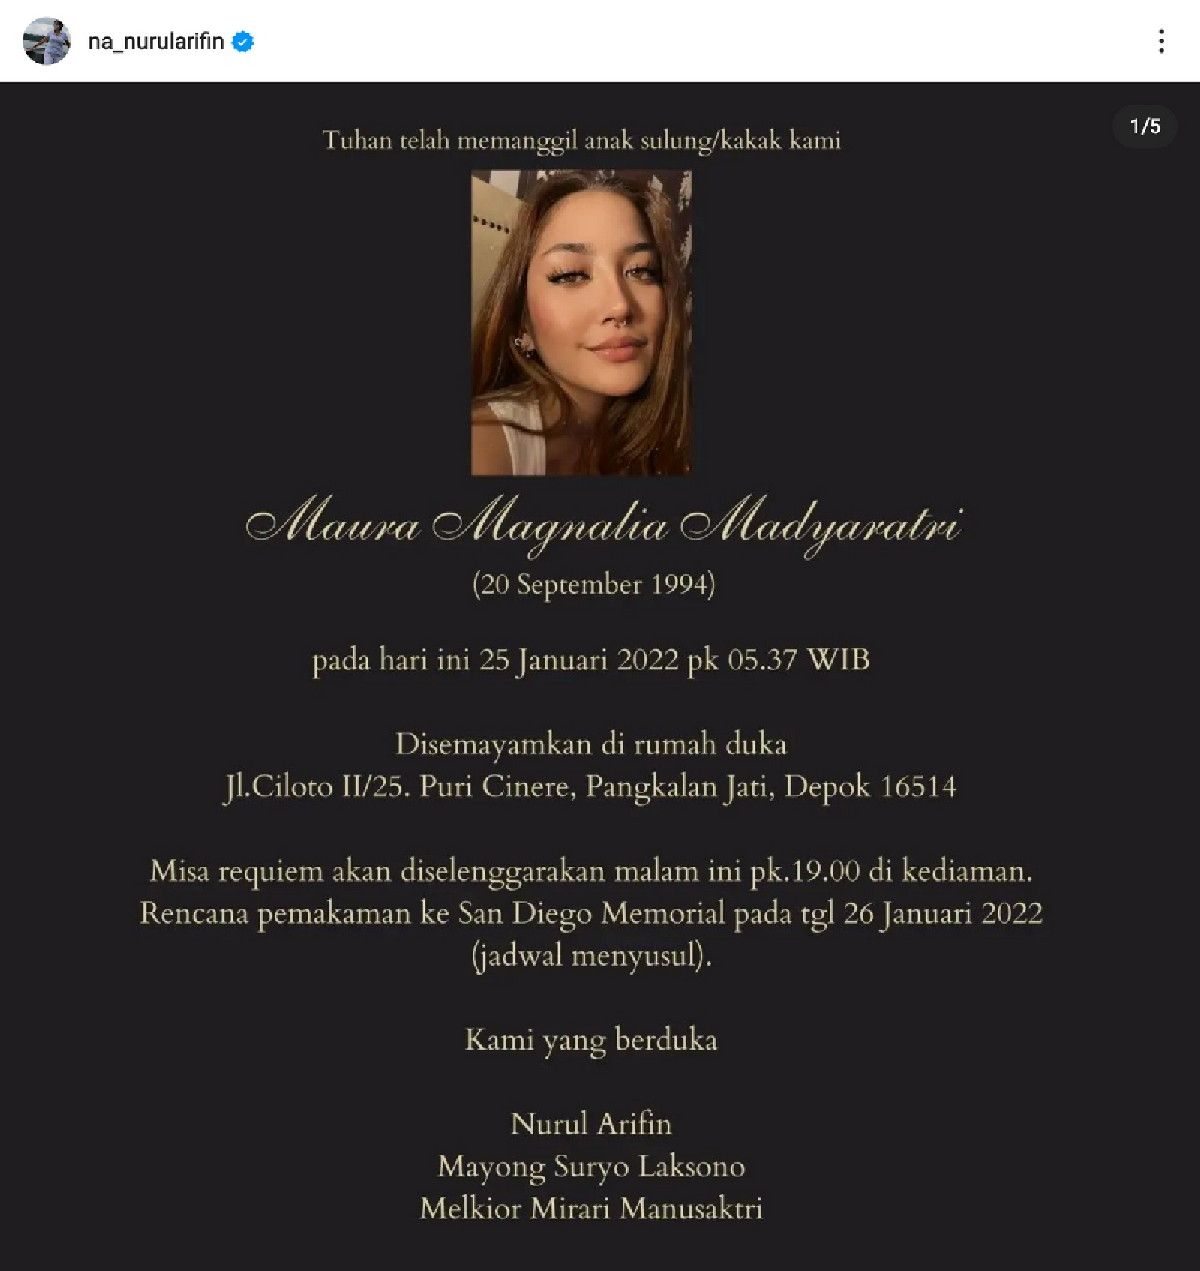 Anak sulung Nurul Arifin, Maura Magnalia Madyaratri meninggal dunia hari ini 25 Januari 2022 pukul 05.37 WIB.*